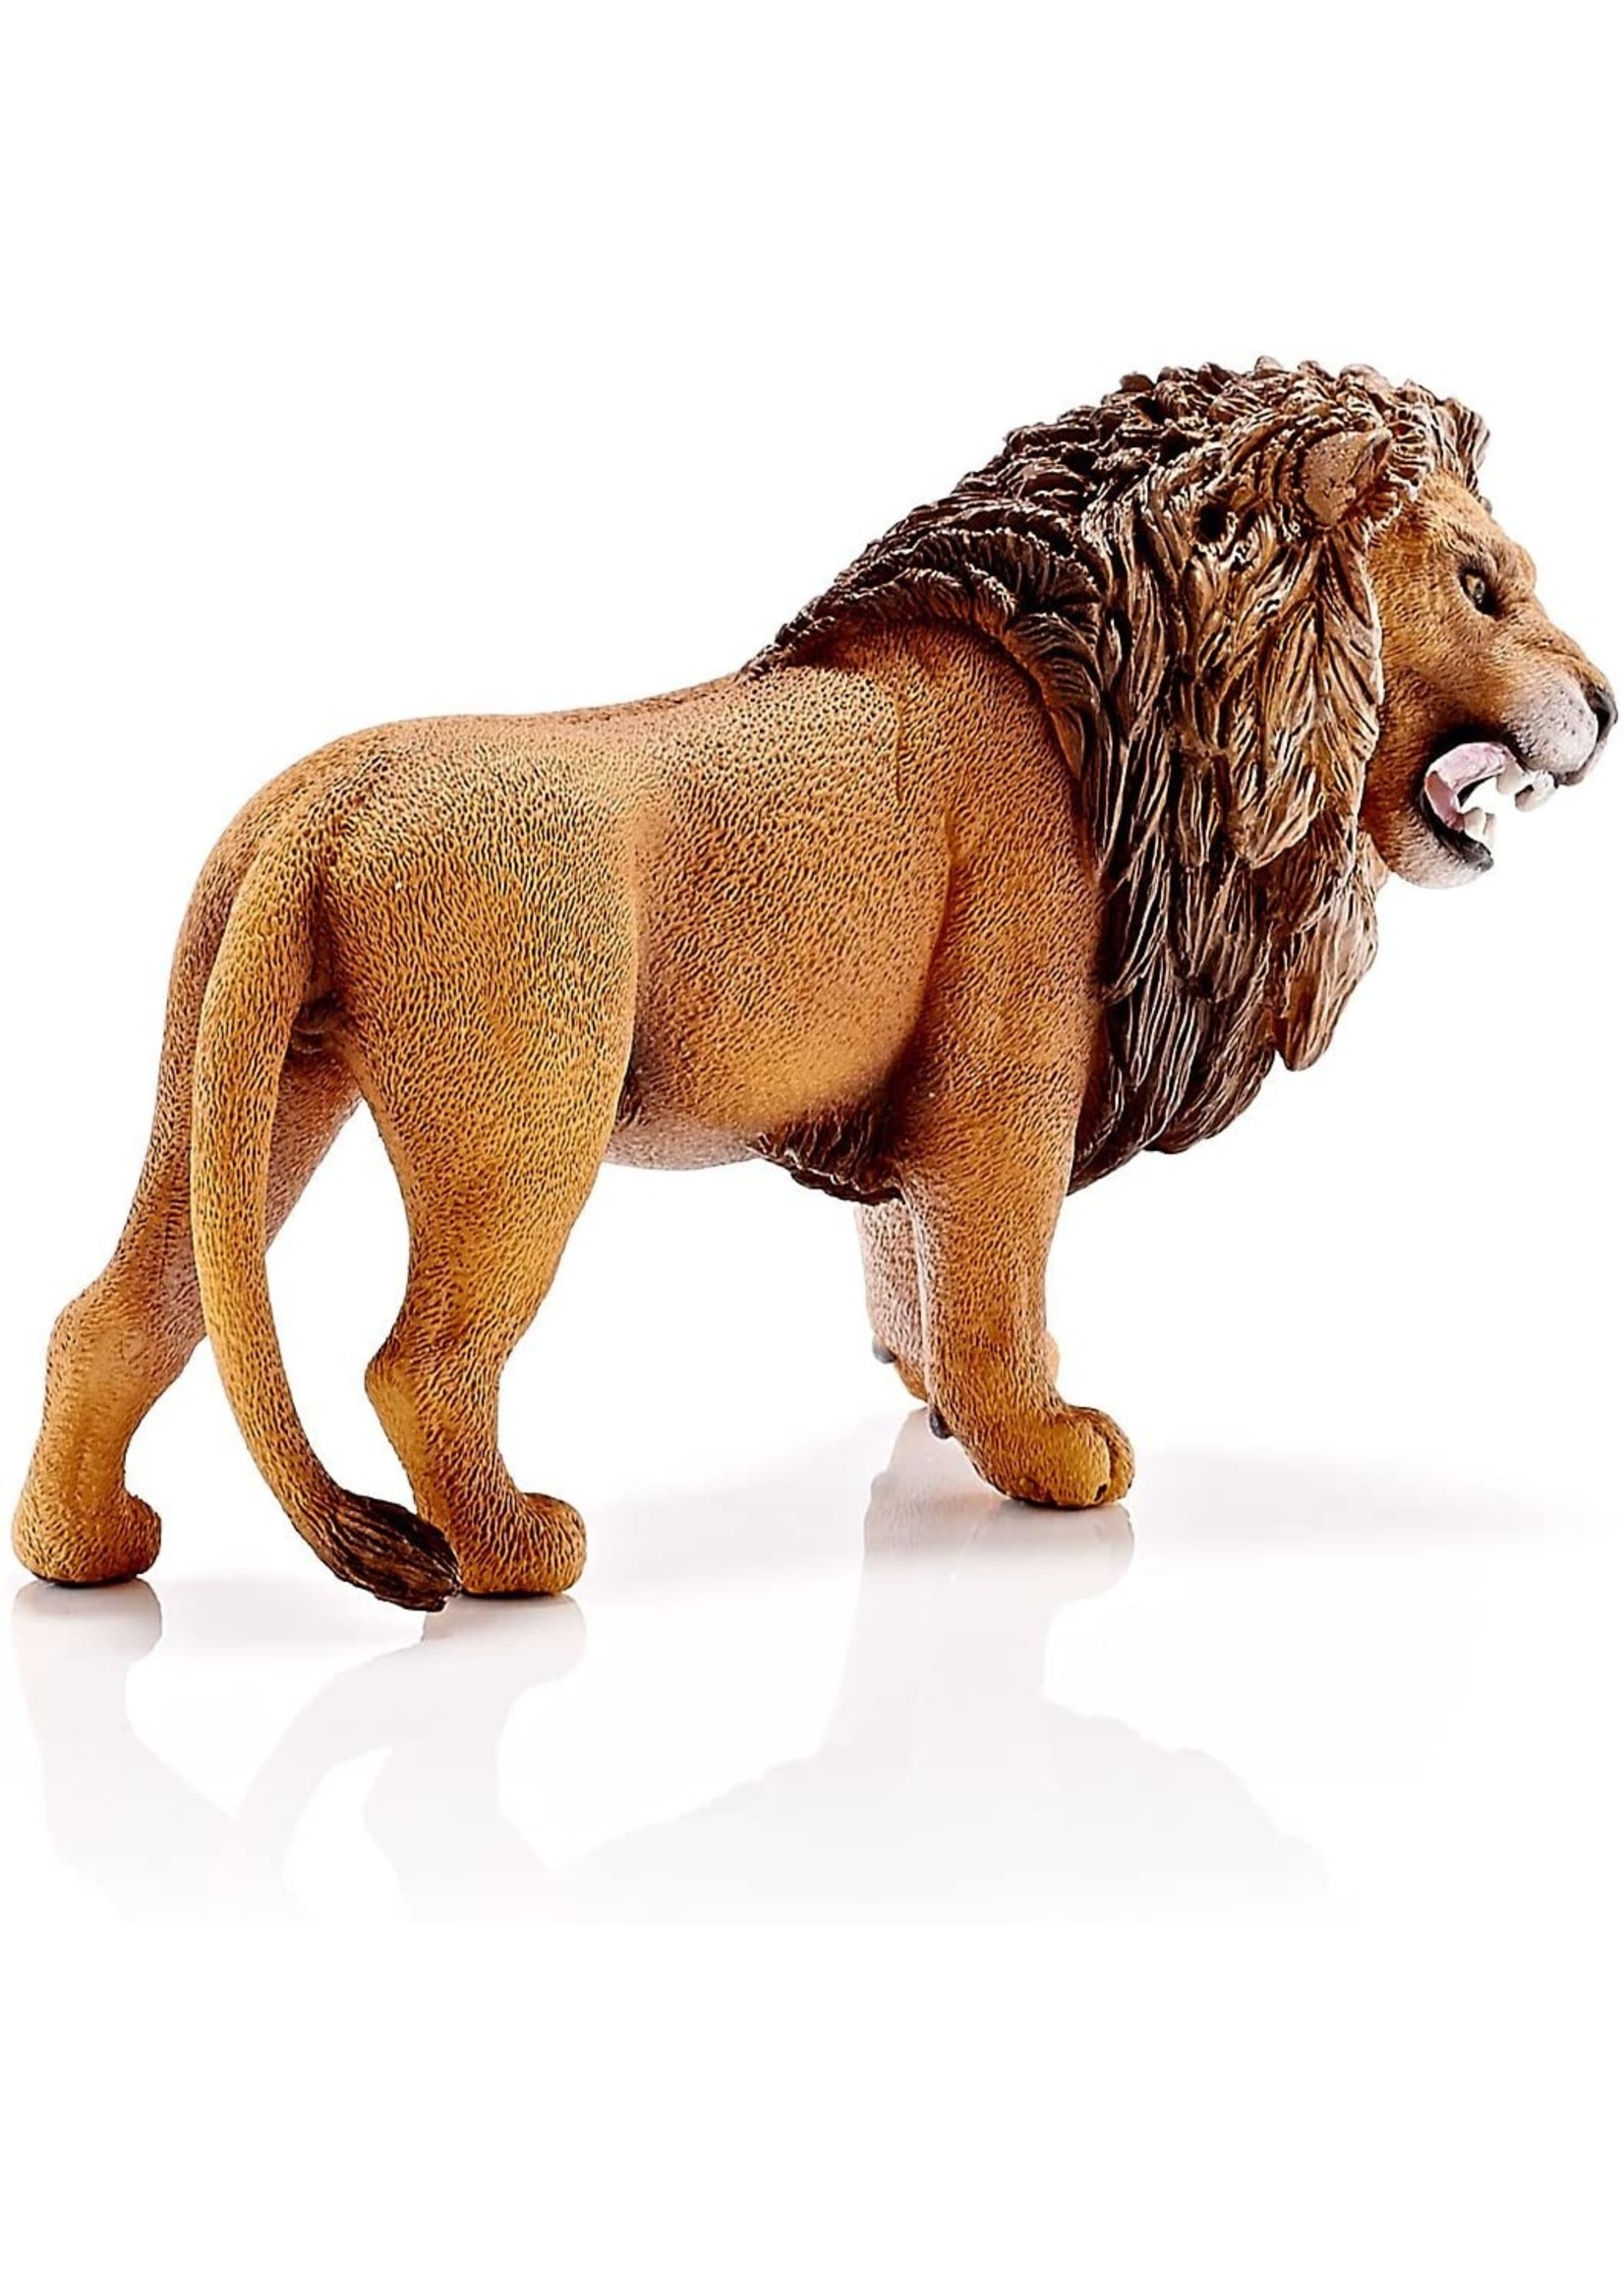 Schleich 14726 - Lion, Roaring